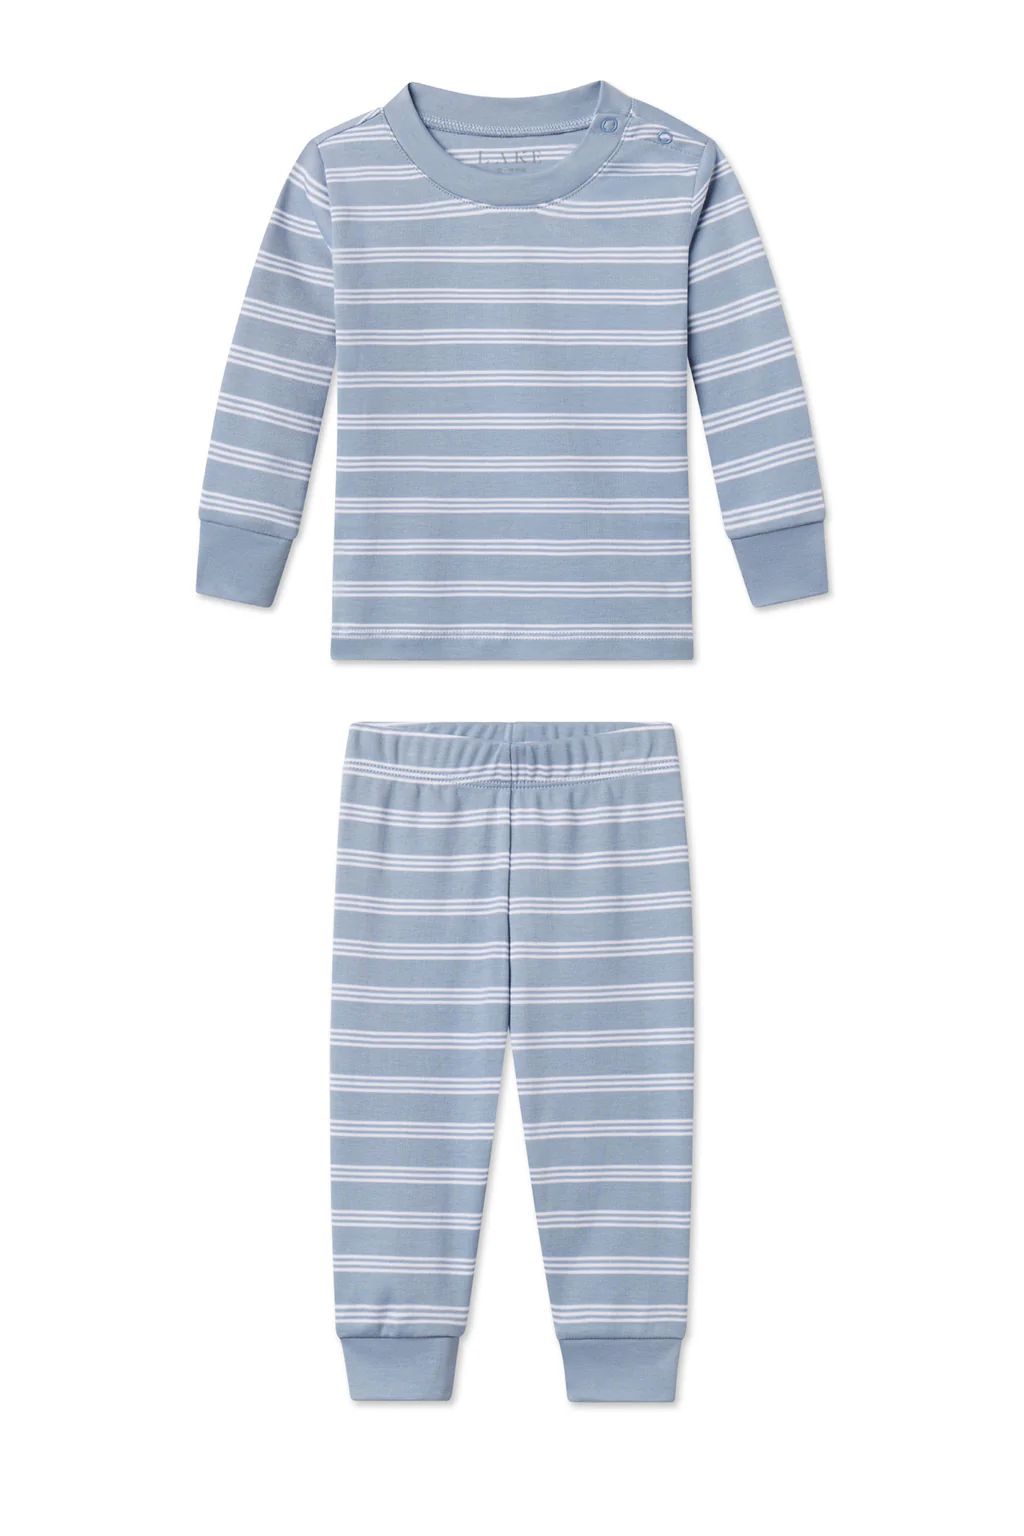 Baby Long-Long Set in Dusty Blue Stripe | Lake Pajamas